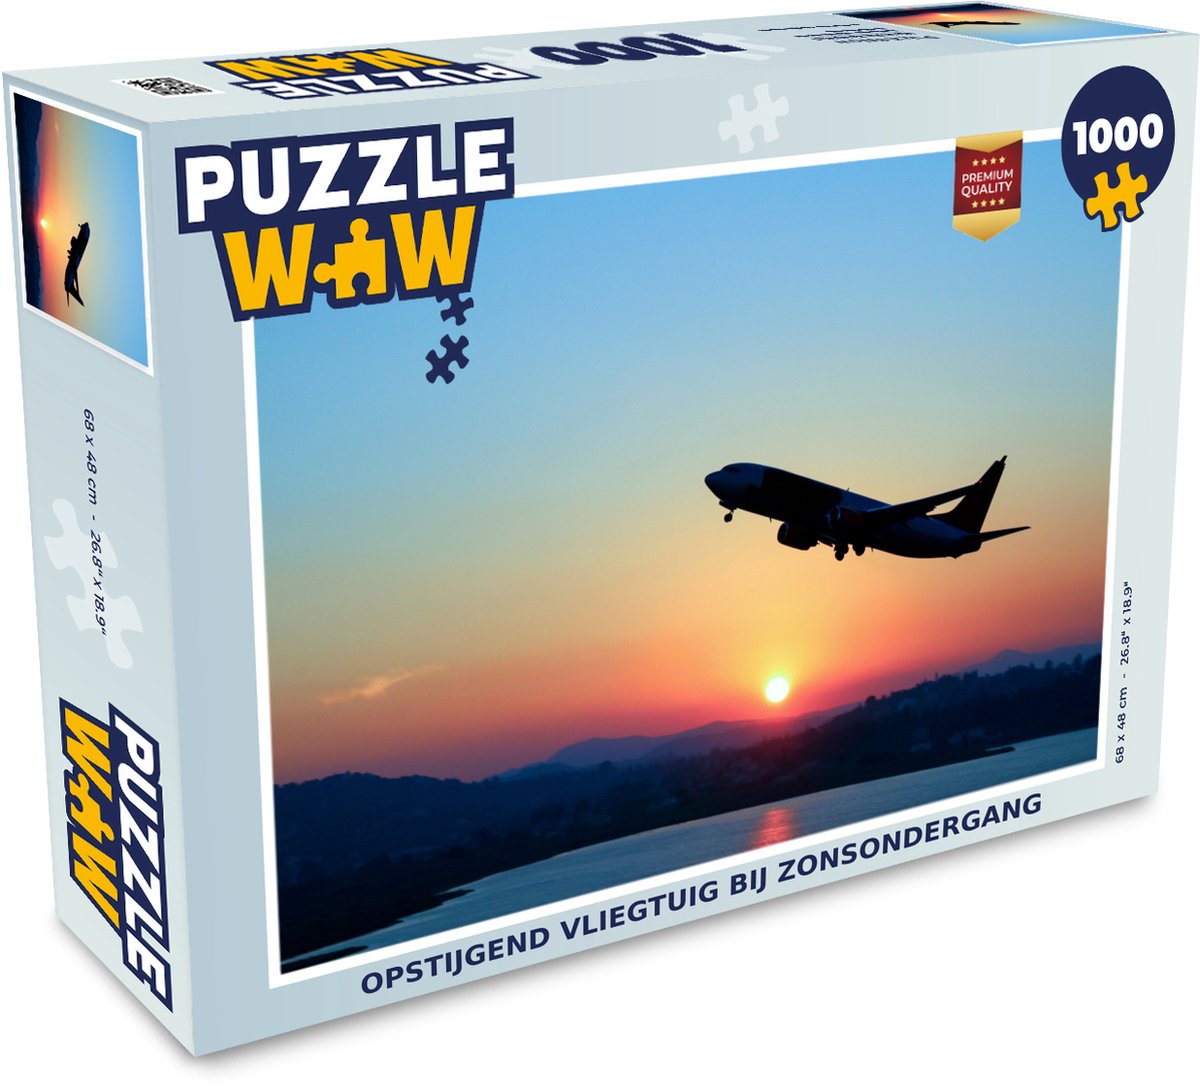 Puzzle porte-avions - Puzzle - Puzzle 1000 pièces adultes